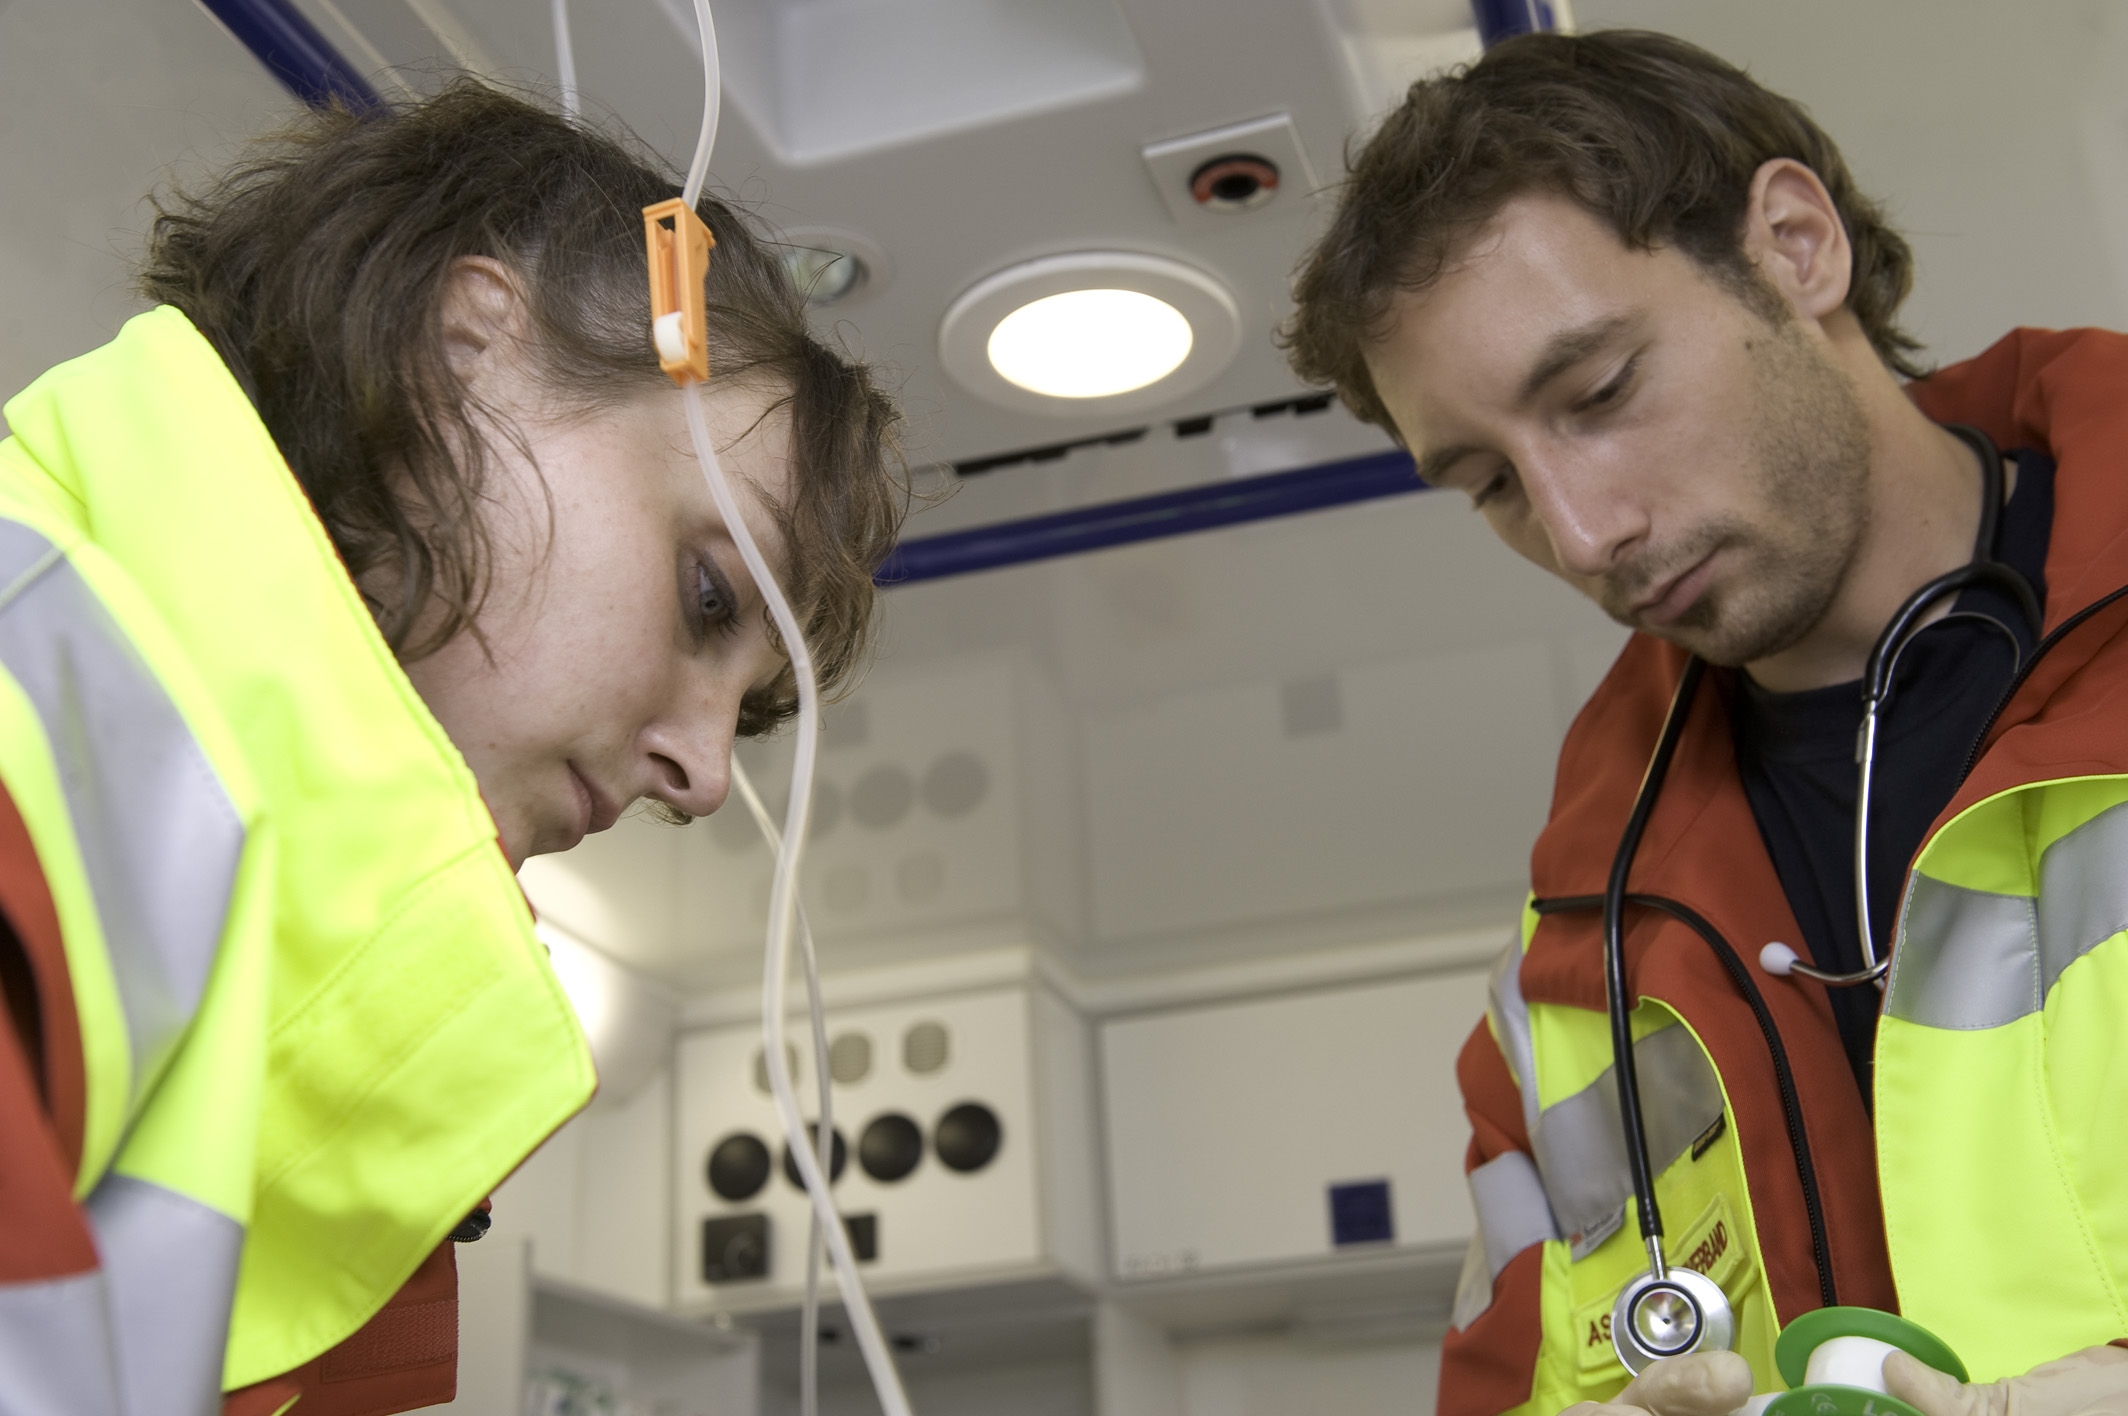 Rettungssanitäter leiten am Unfallort die Versorgung des Patienten ein und unterstützen den Notarzt und den Rettungsassistenten.